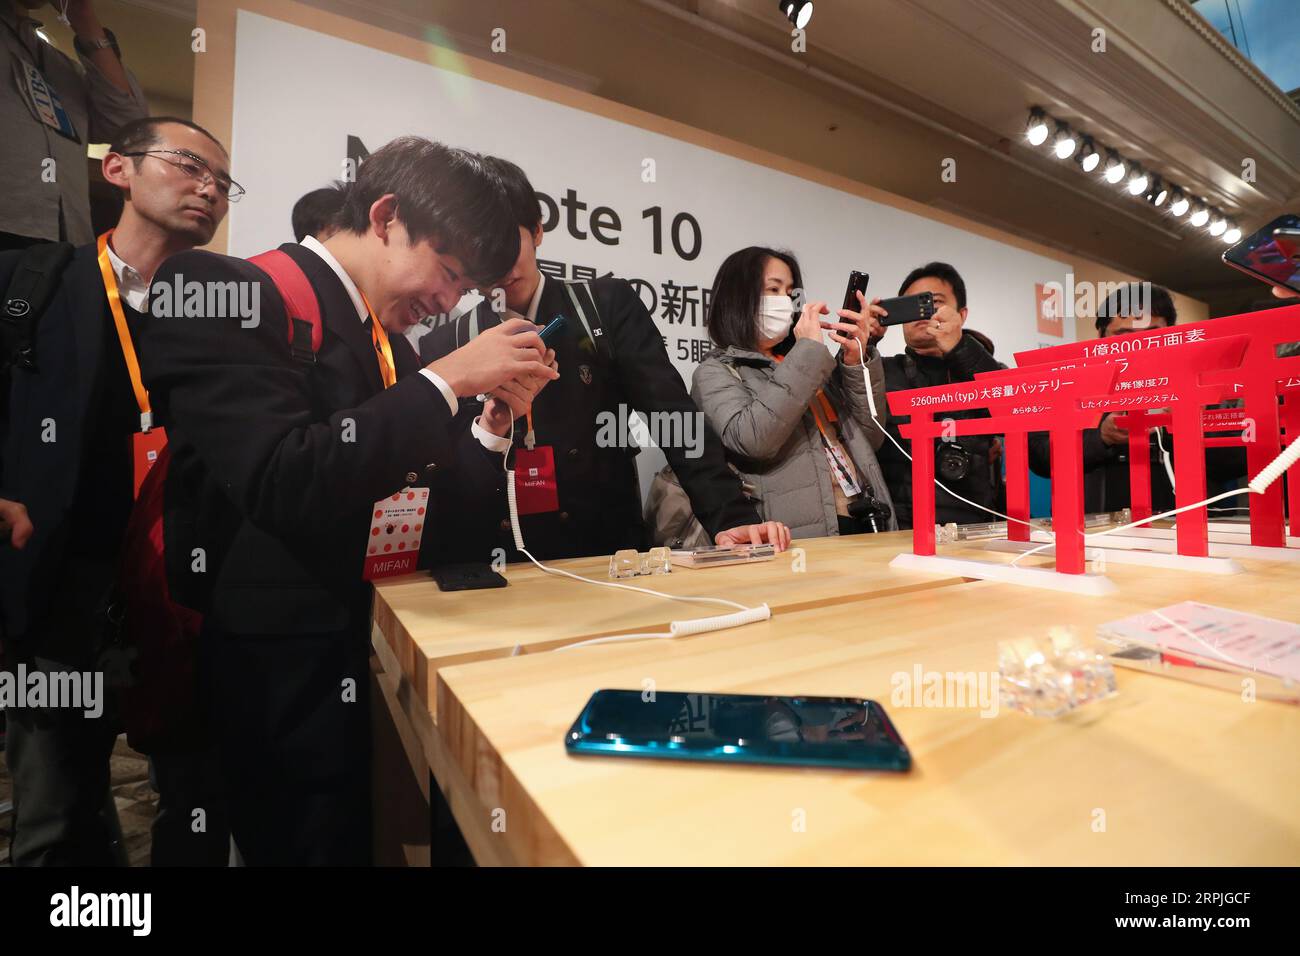 191209 -- TOKYO, 9 dicembre 2019 -- giornalisti e visitatori sperimentano l'ultimo smartphone di punta mi Note 10 lanciato da Xiaomi durante la sua cerimonia di lancio a Tokyo, Giappone, 9 dicembre 2019. La società tecnologica cinese Xiaomi ha annunciato lunedì che sarebbe entrato nel mercato giapponese con il suo ultimo smartphone di punta mi Note 10 a Tokyo, in Giappone. GIAPPONE-TOKYO-XIAOMI-CERIMONIA-LANCIO-SMARTPHONE DUXXIAOYI PUBLICATIONXNOTXINXCHN Foto Stock